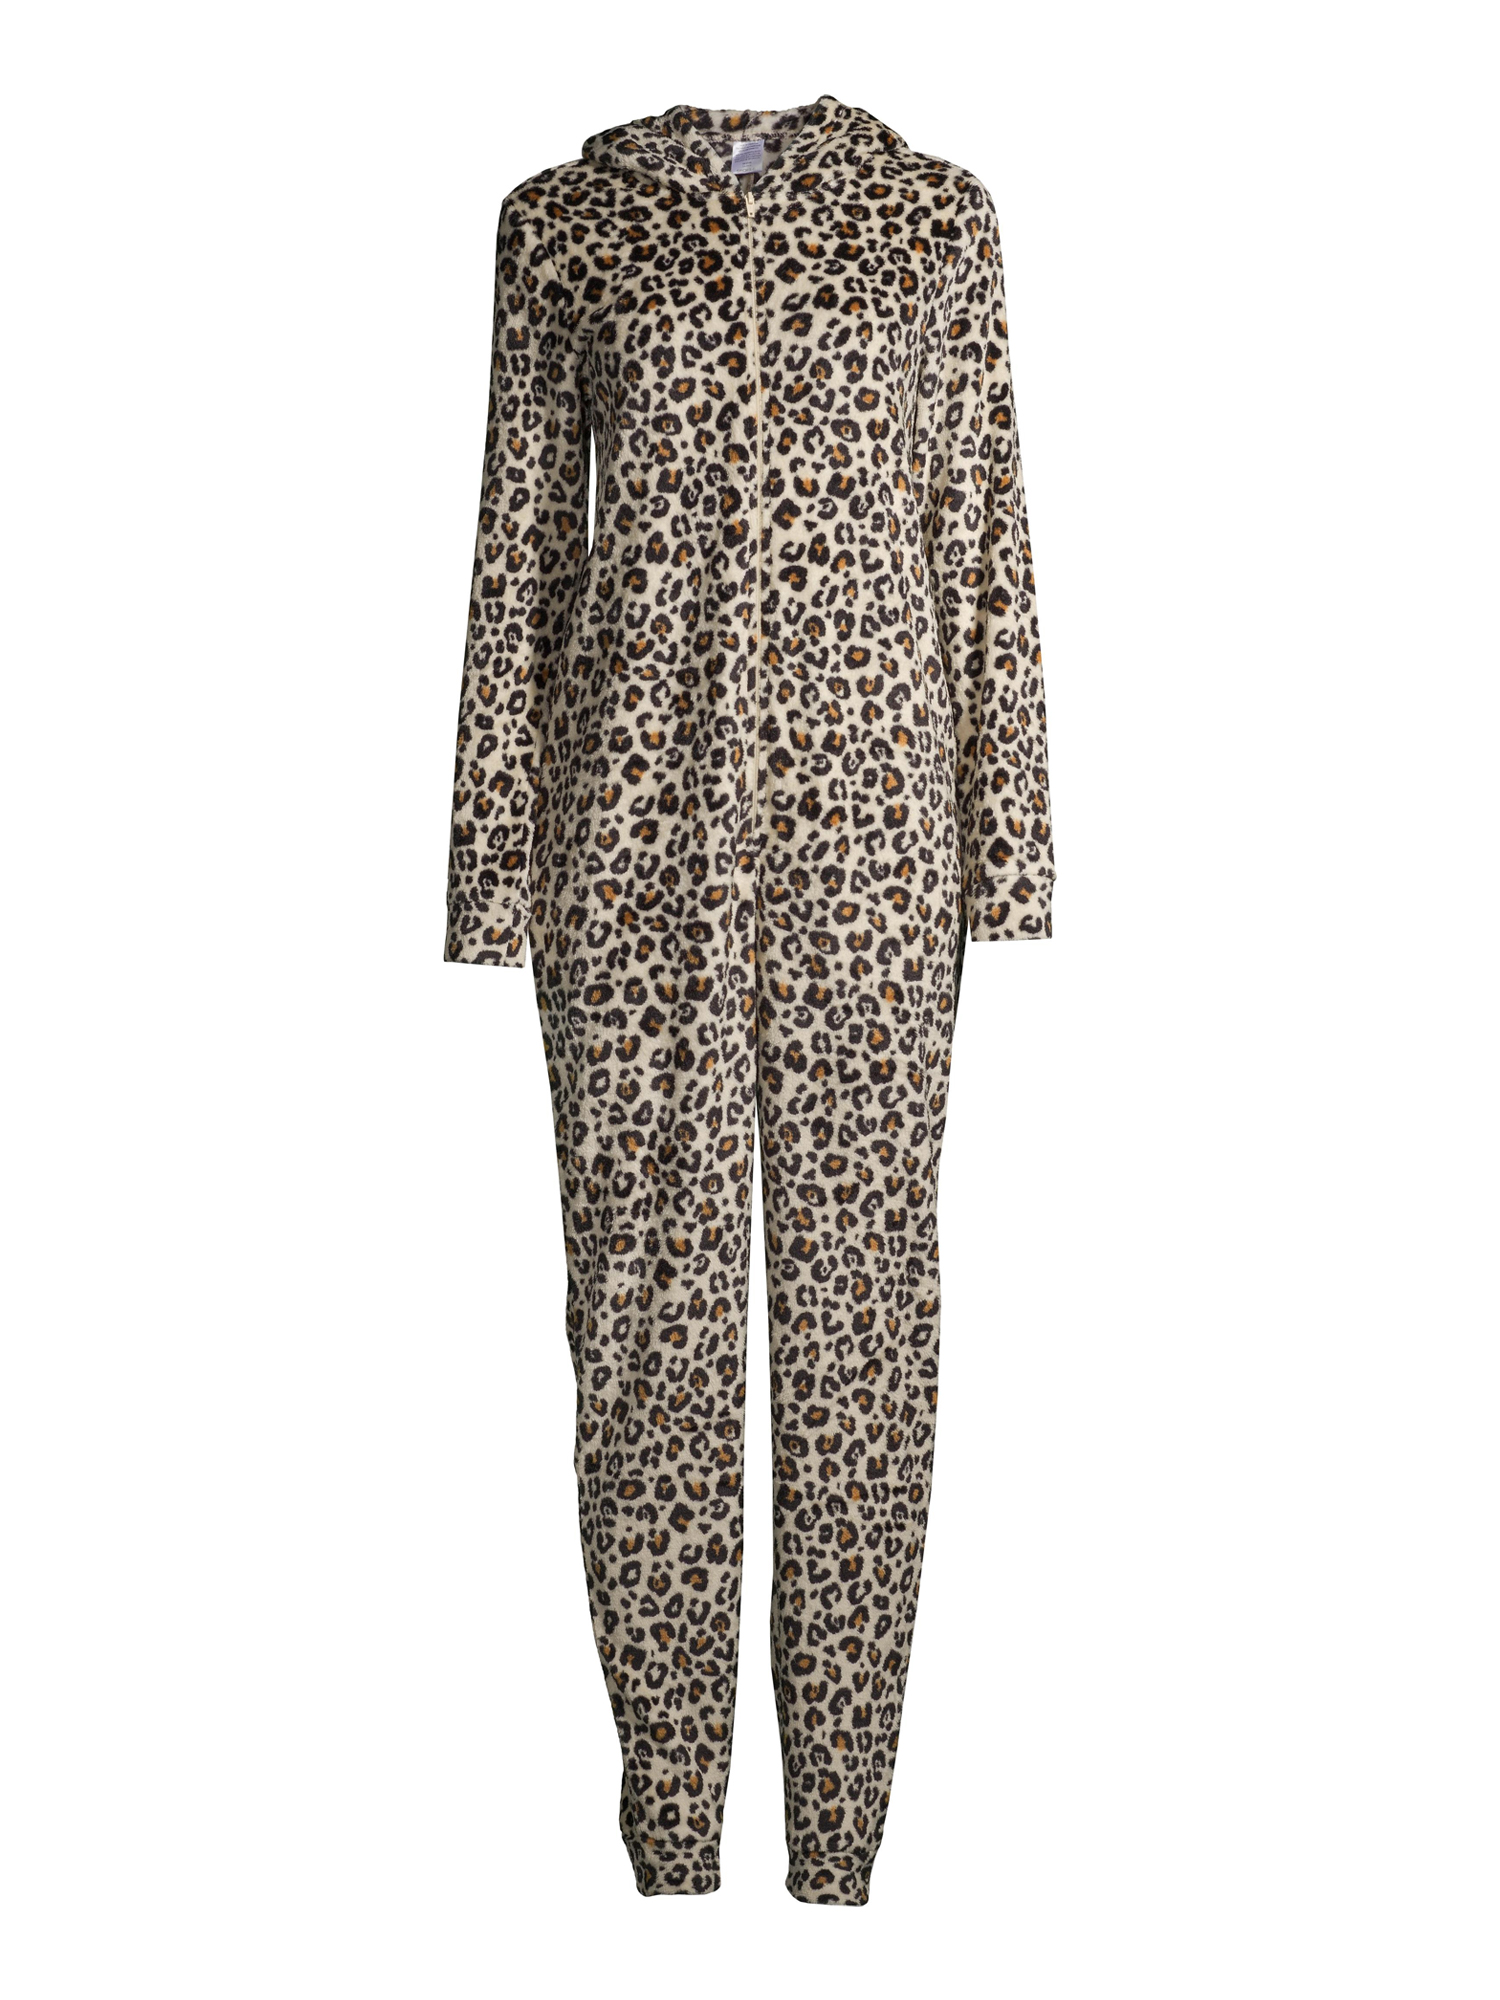 George Women's Leopard Print Union Suit - image 3 of 6